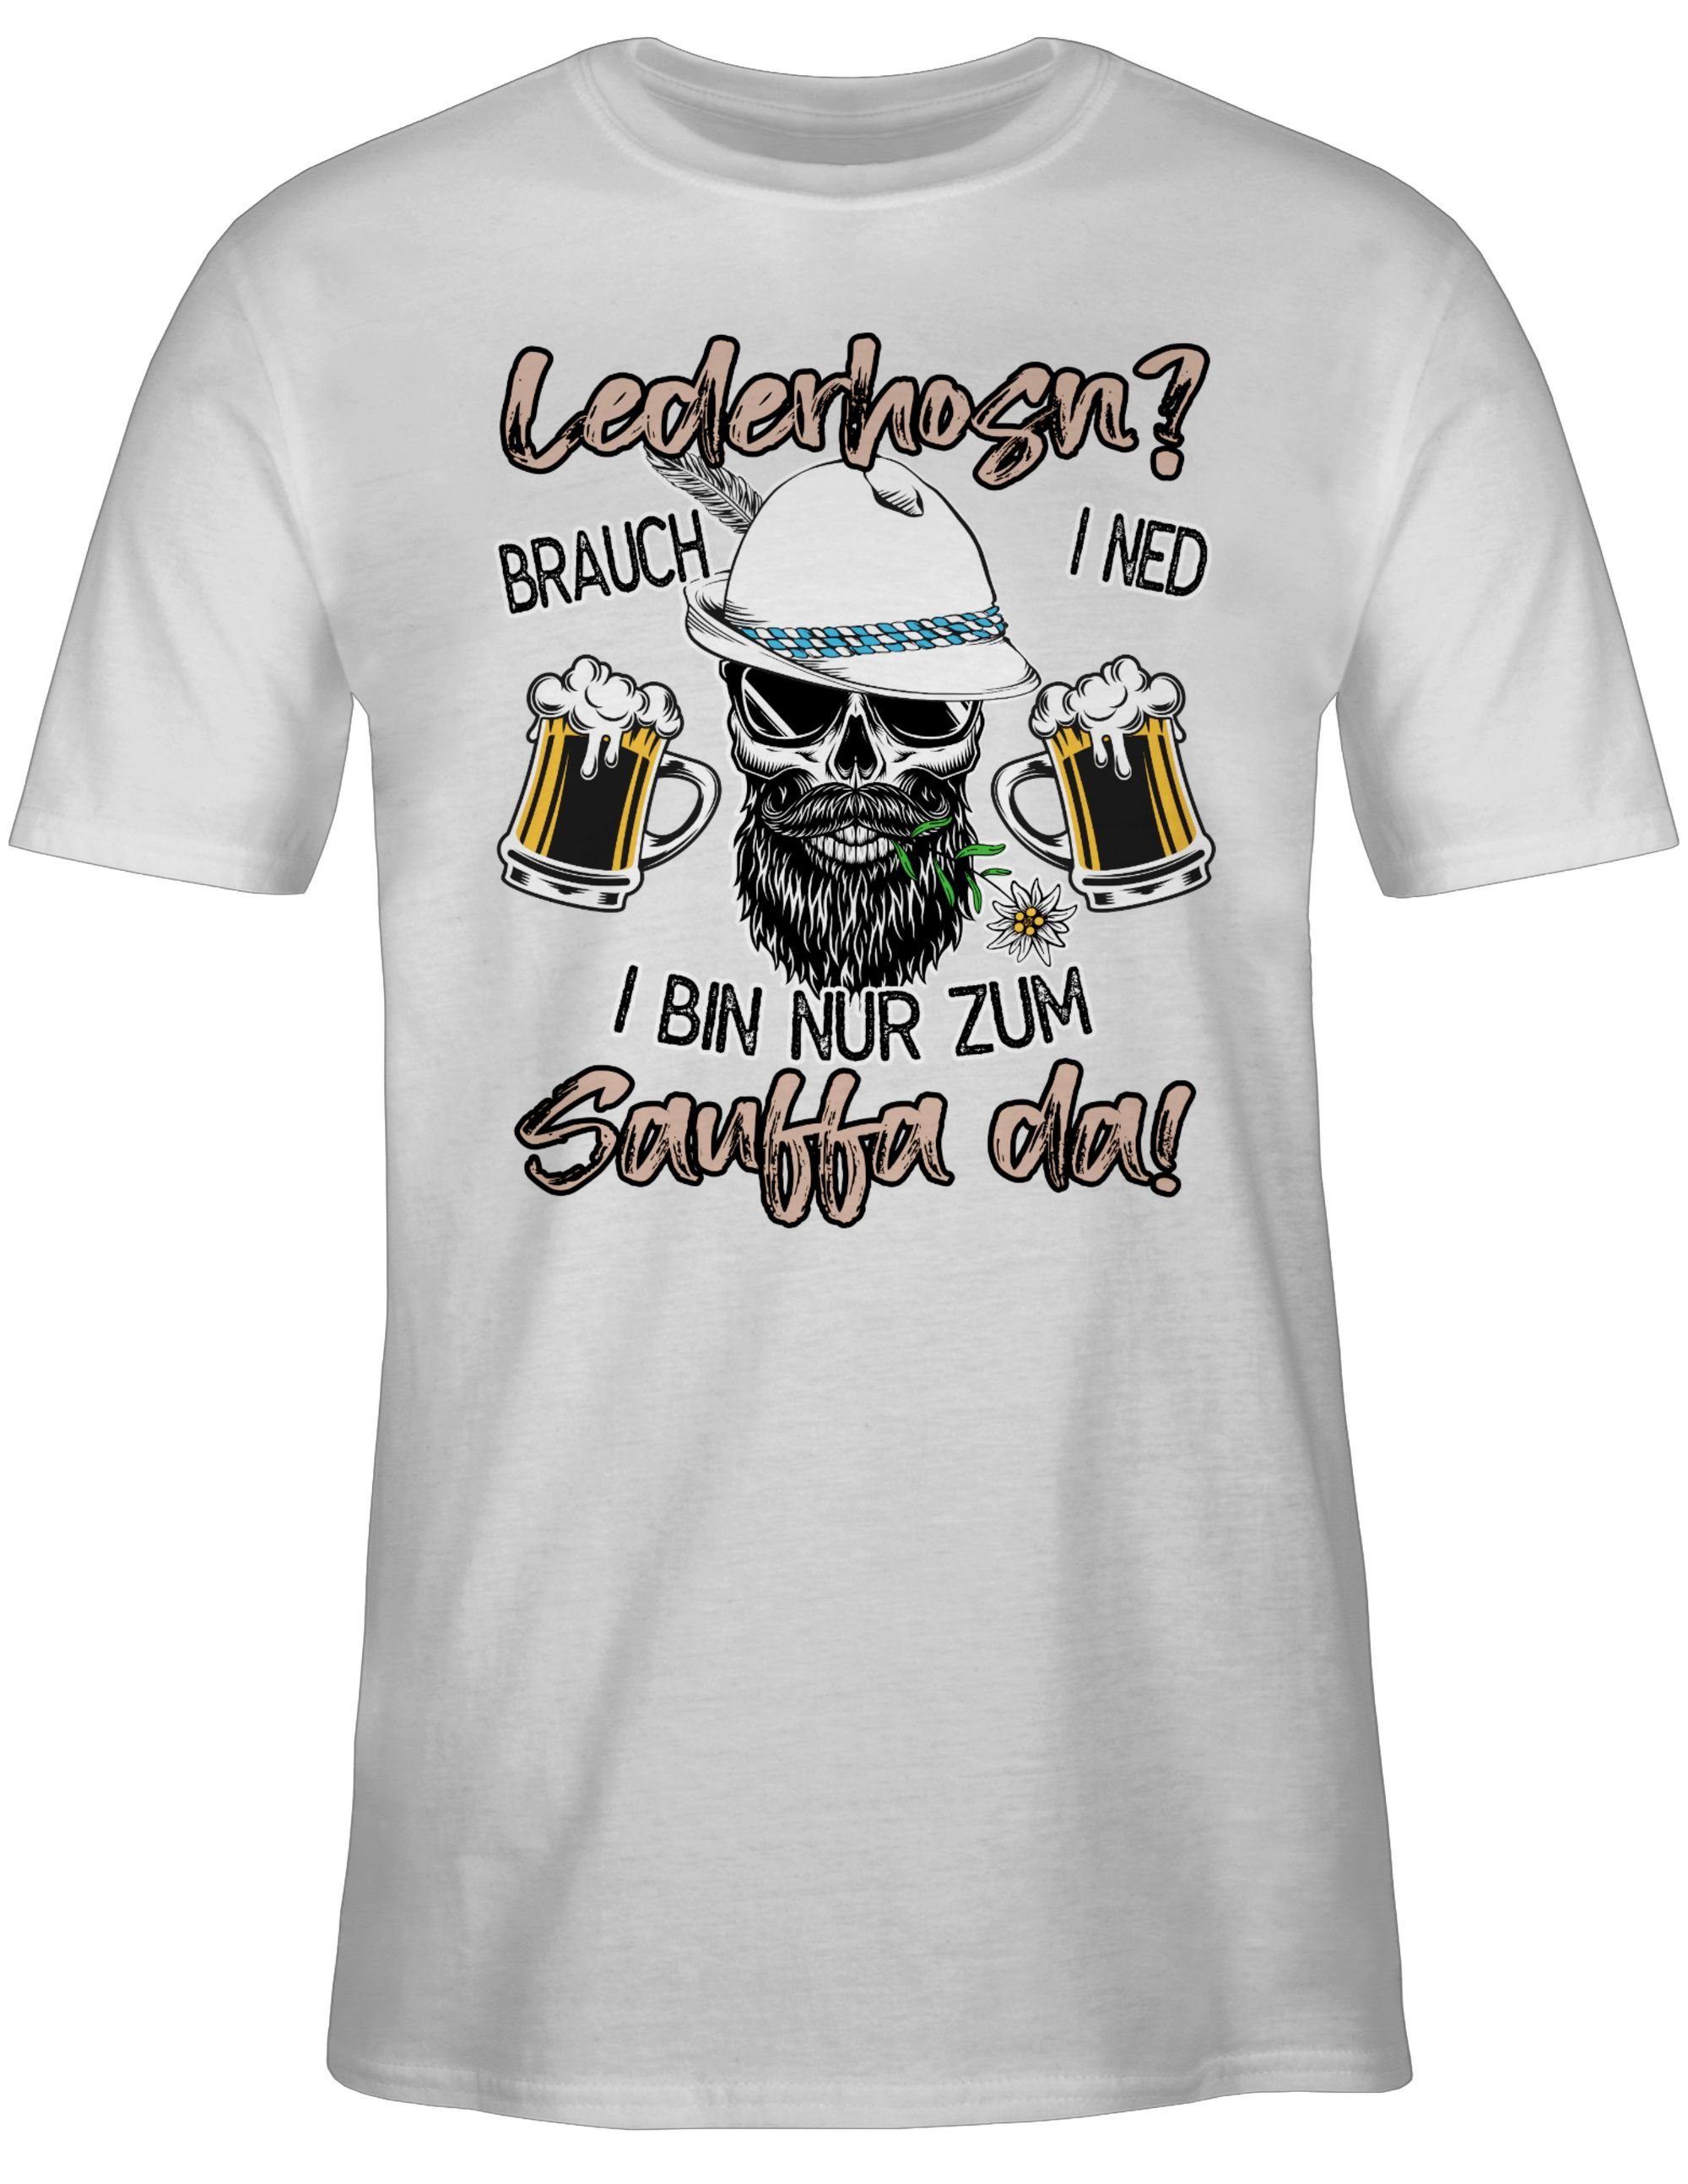 Mode Oktoberfest Spruch Herren für Lausbua Trinken T-Shirt Weiß Bayrisch 02 Lederhose Shirtracer Party